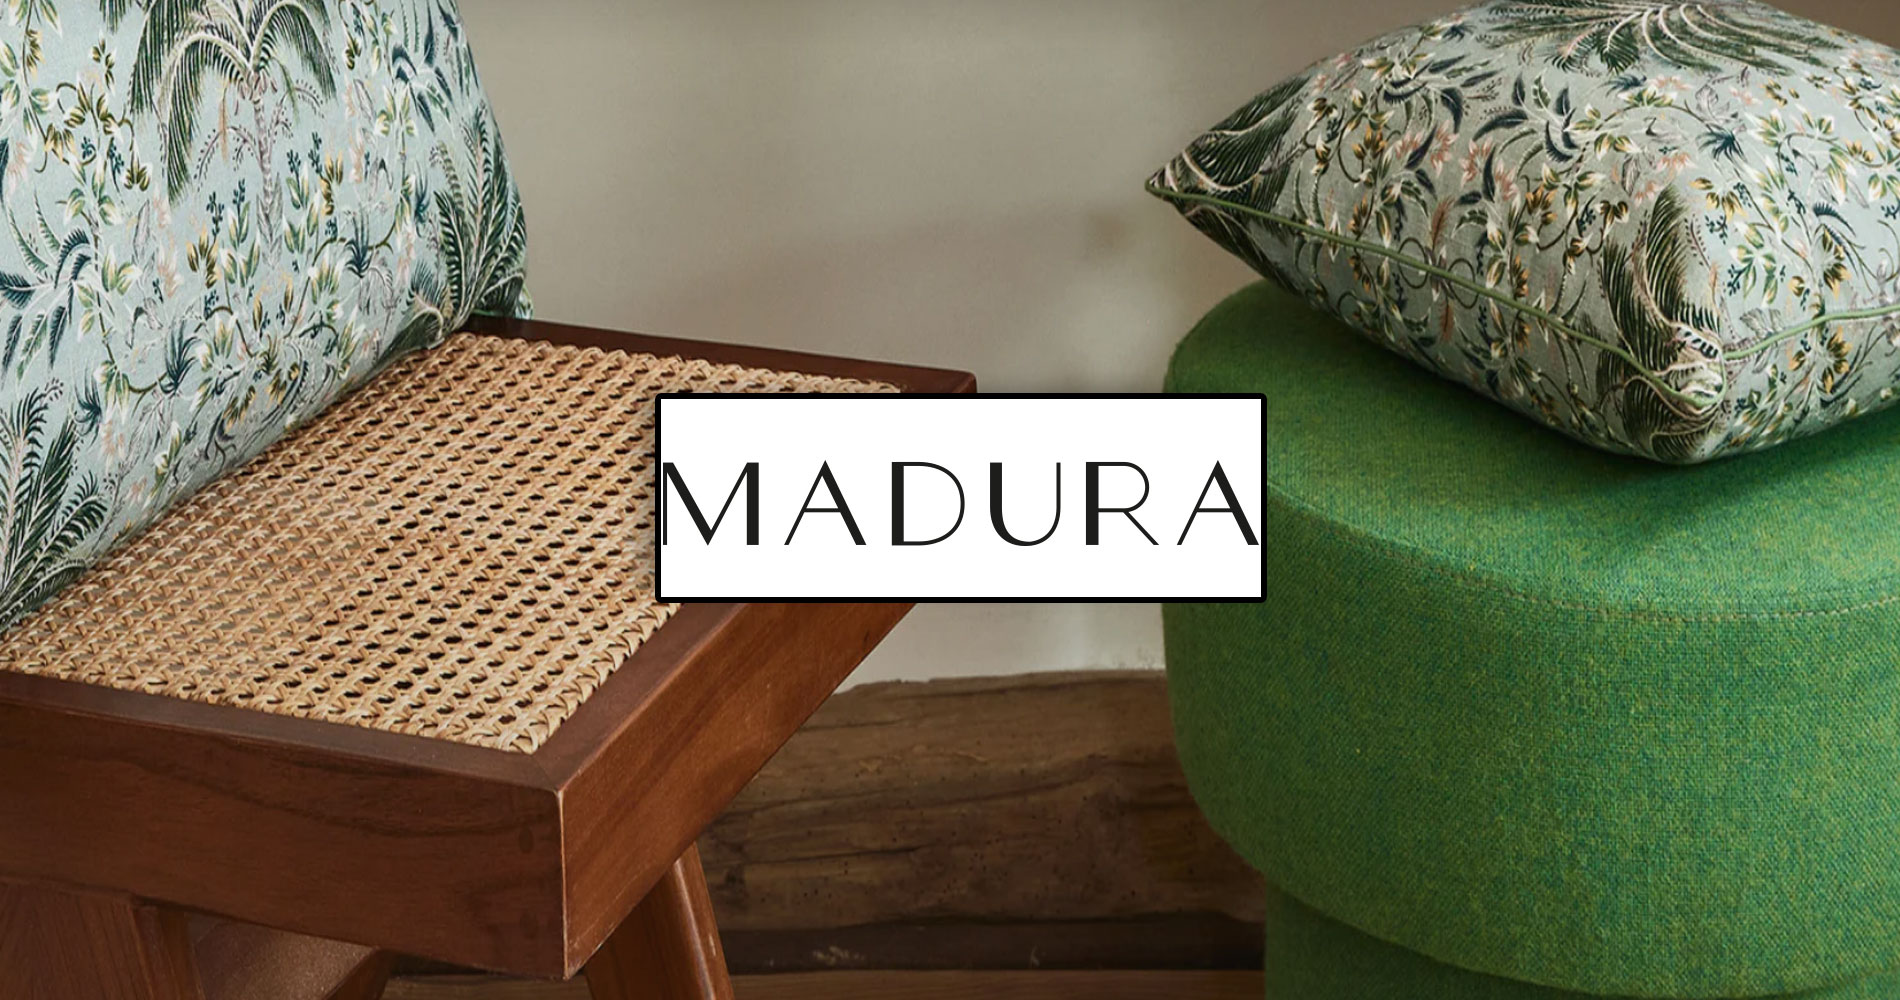 voir les magasins de textiles Madura